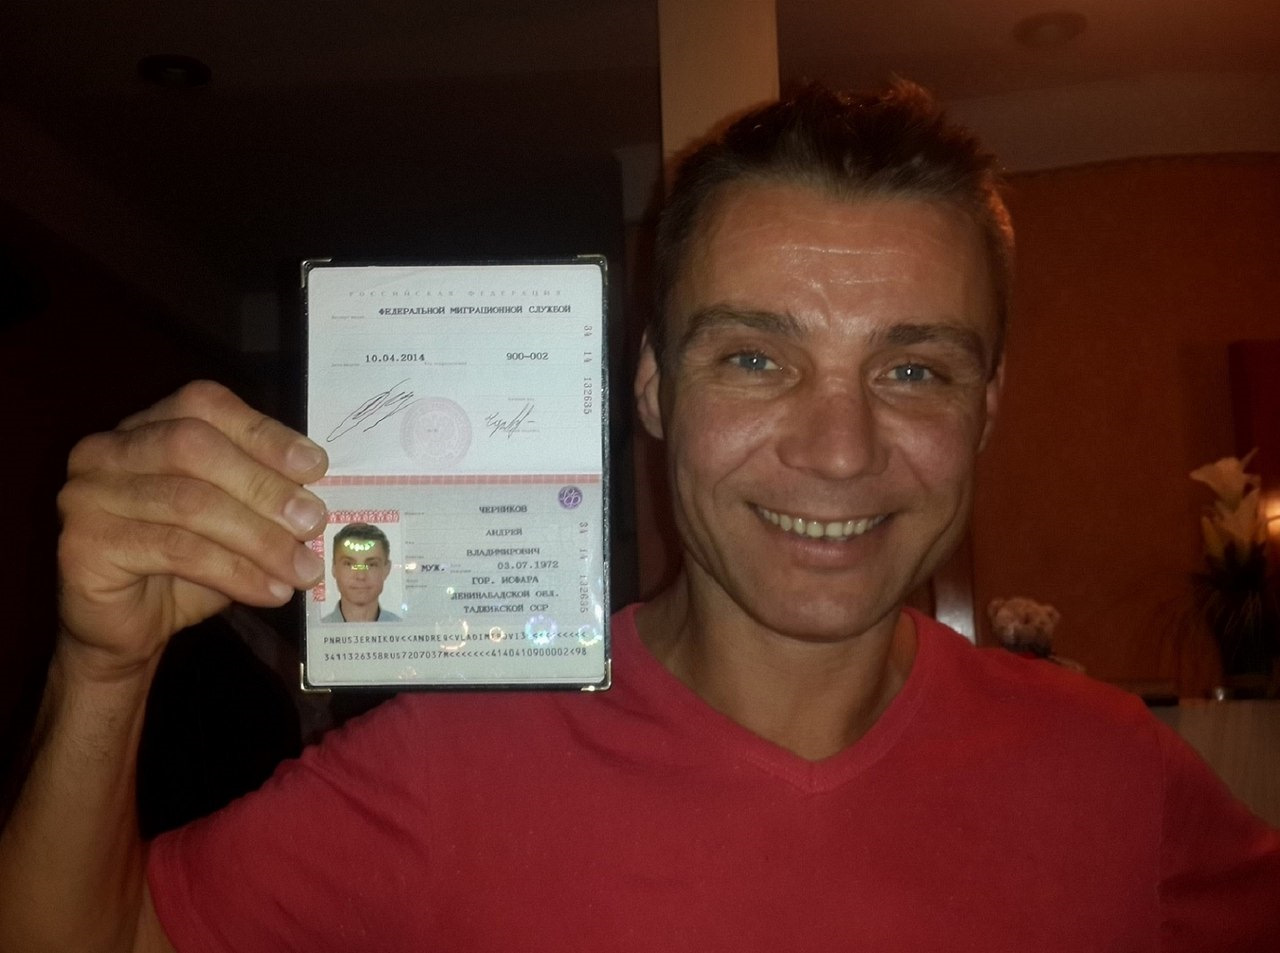 Фото паспорта и селфи